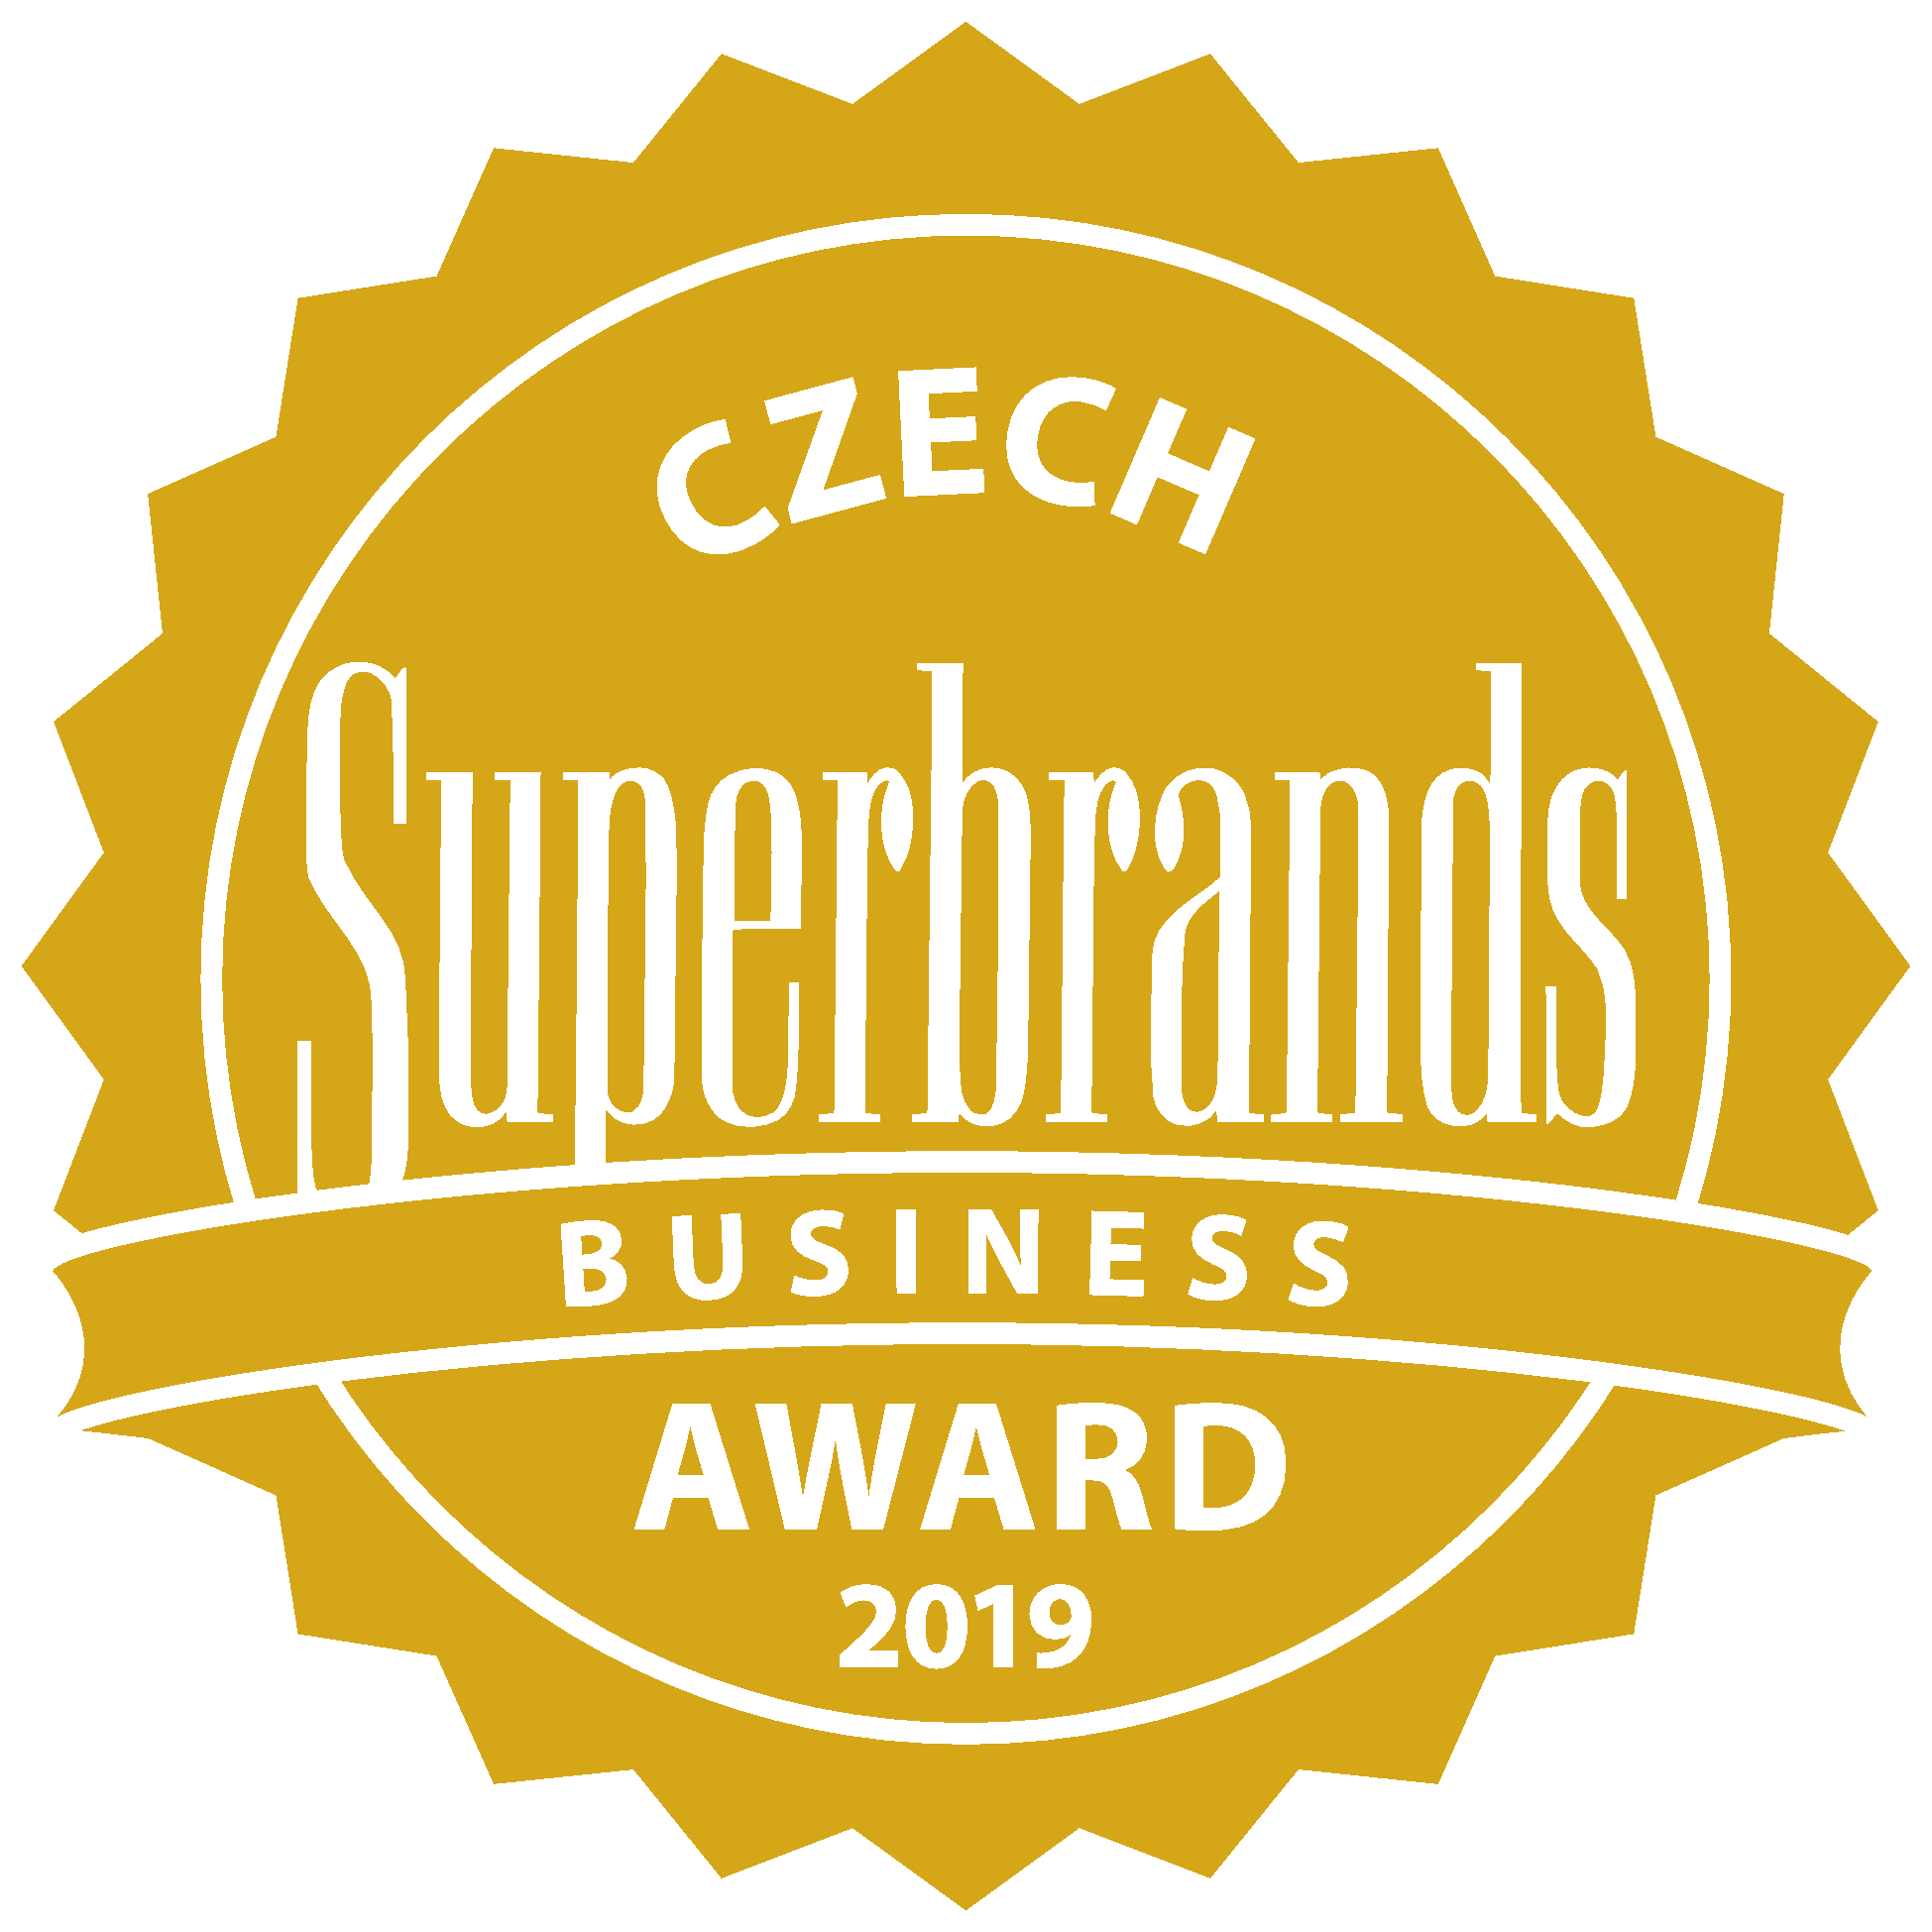 2019 - Czech Business Superbrand